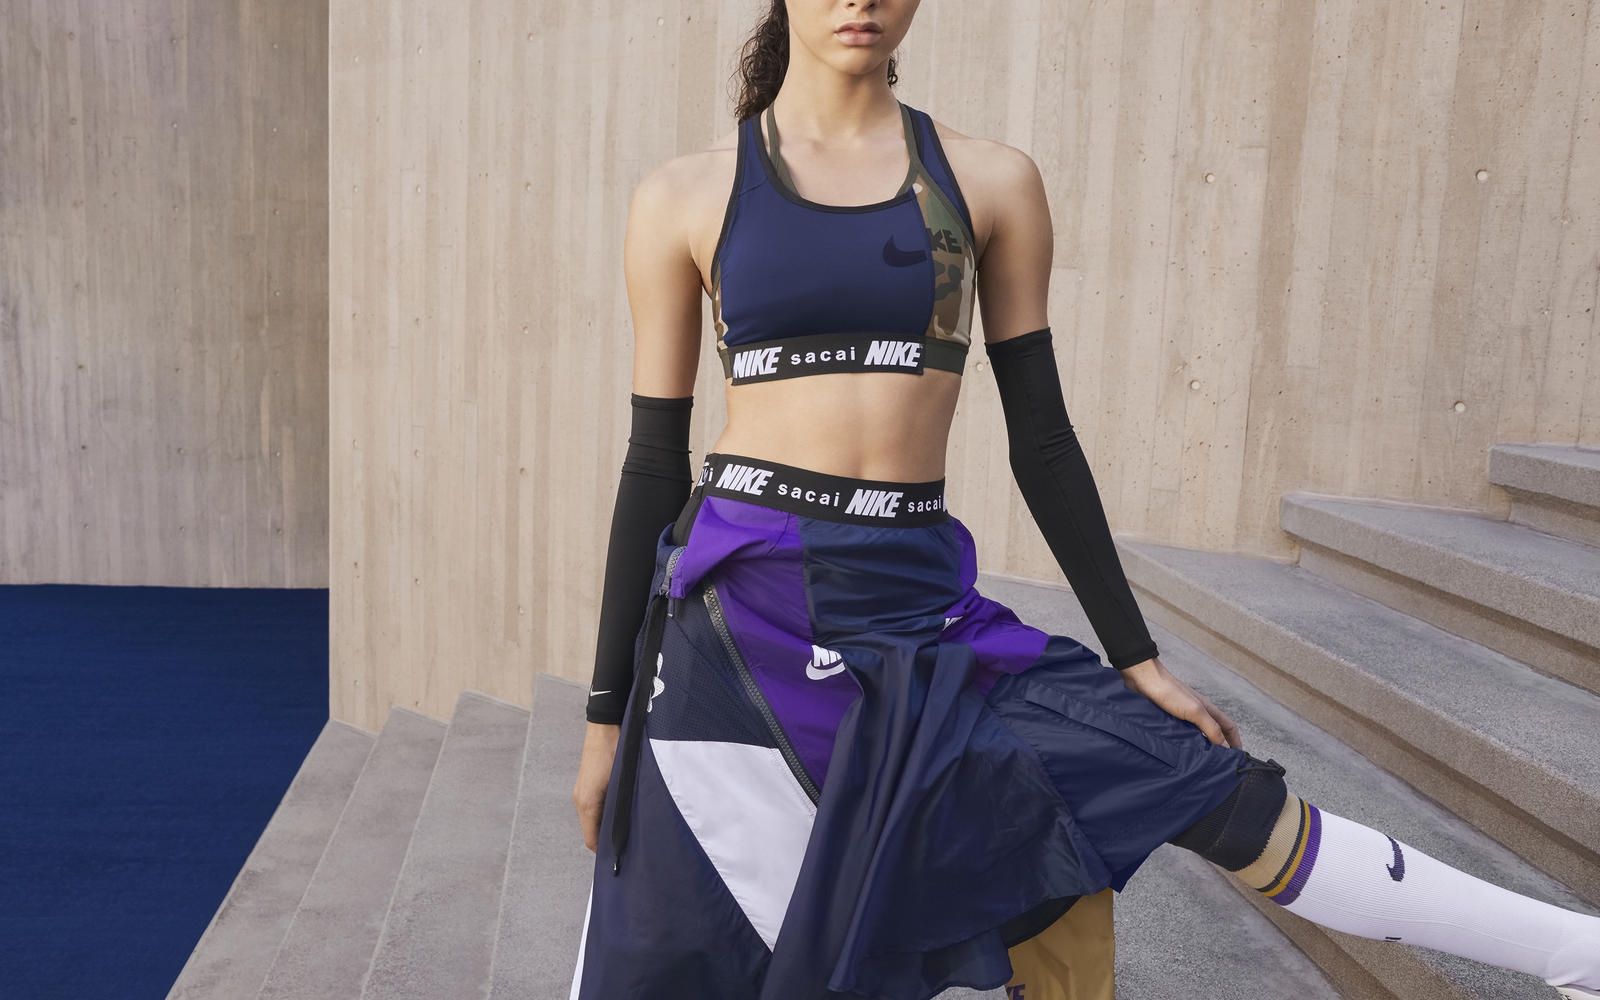 Herméticamente hombro Directamente Nike x sacai 'Running Collection', un híbrido (literalmente) perfecto -  Good2b lifestyle Barcelona & Madrid